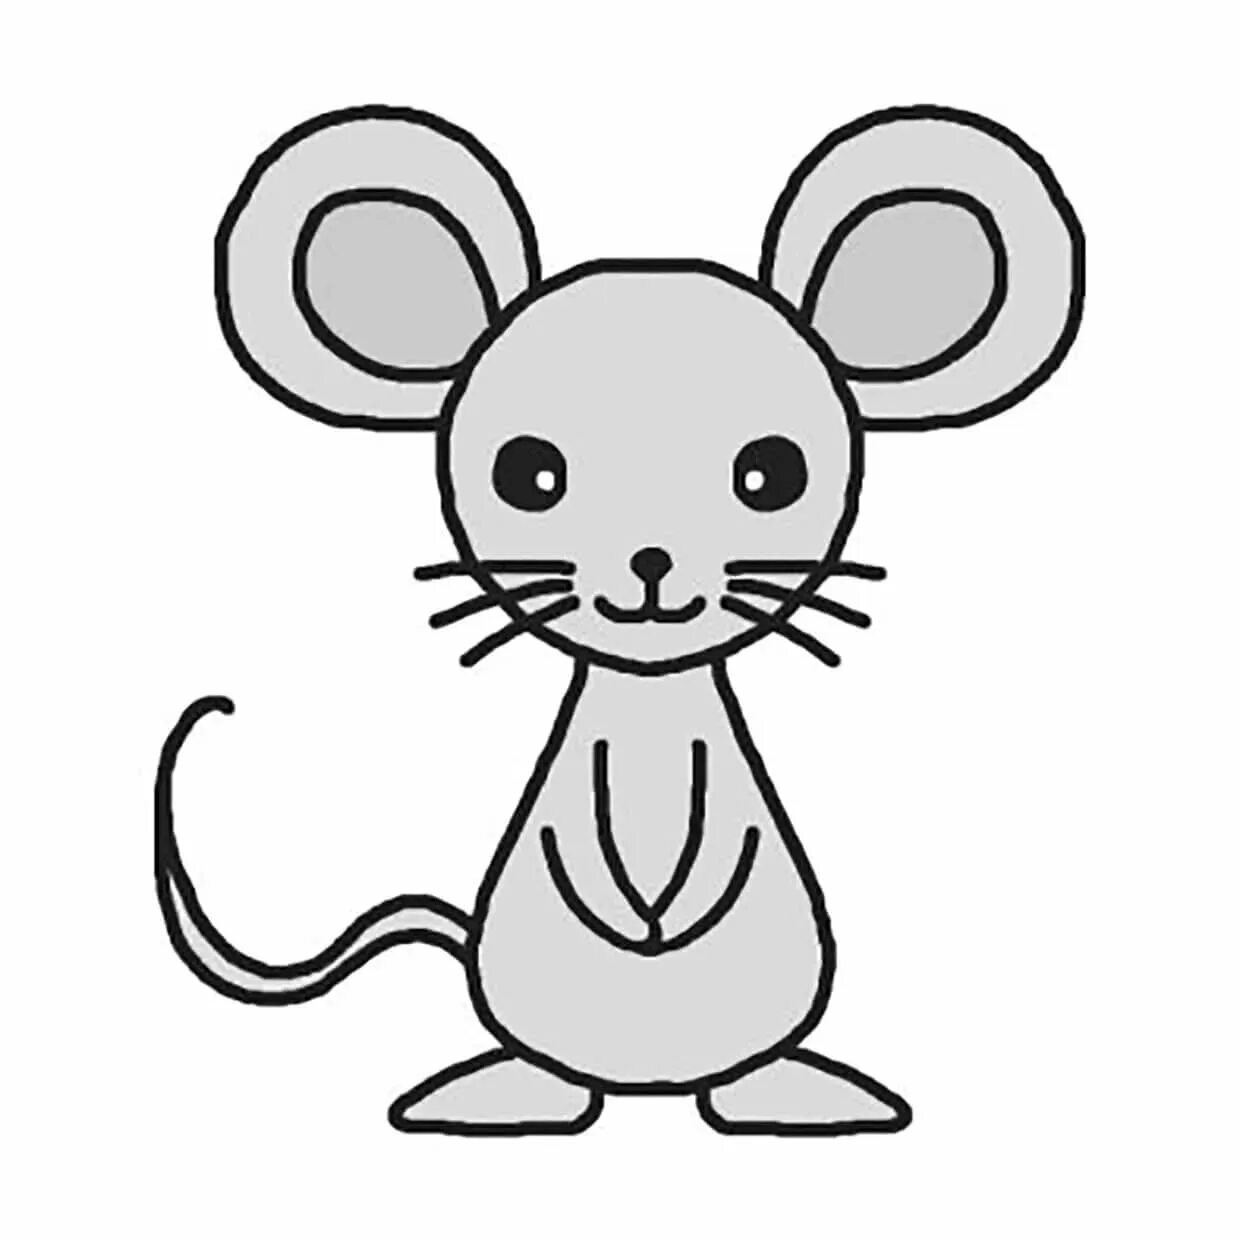 Мышка рисунок. Мышка рисунок для детей. Рисунки для срисовки для детей. Мышка рисунок для детей карандашом. Как легко нарисовать мышку